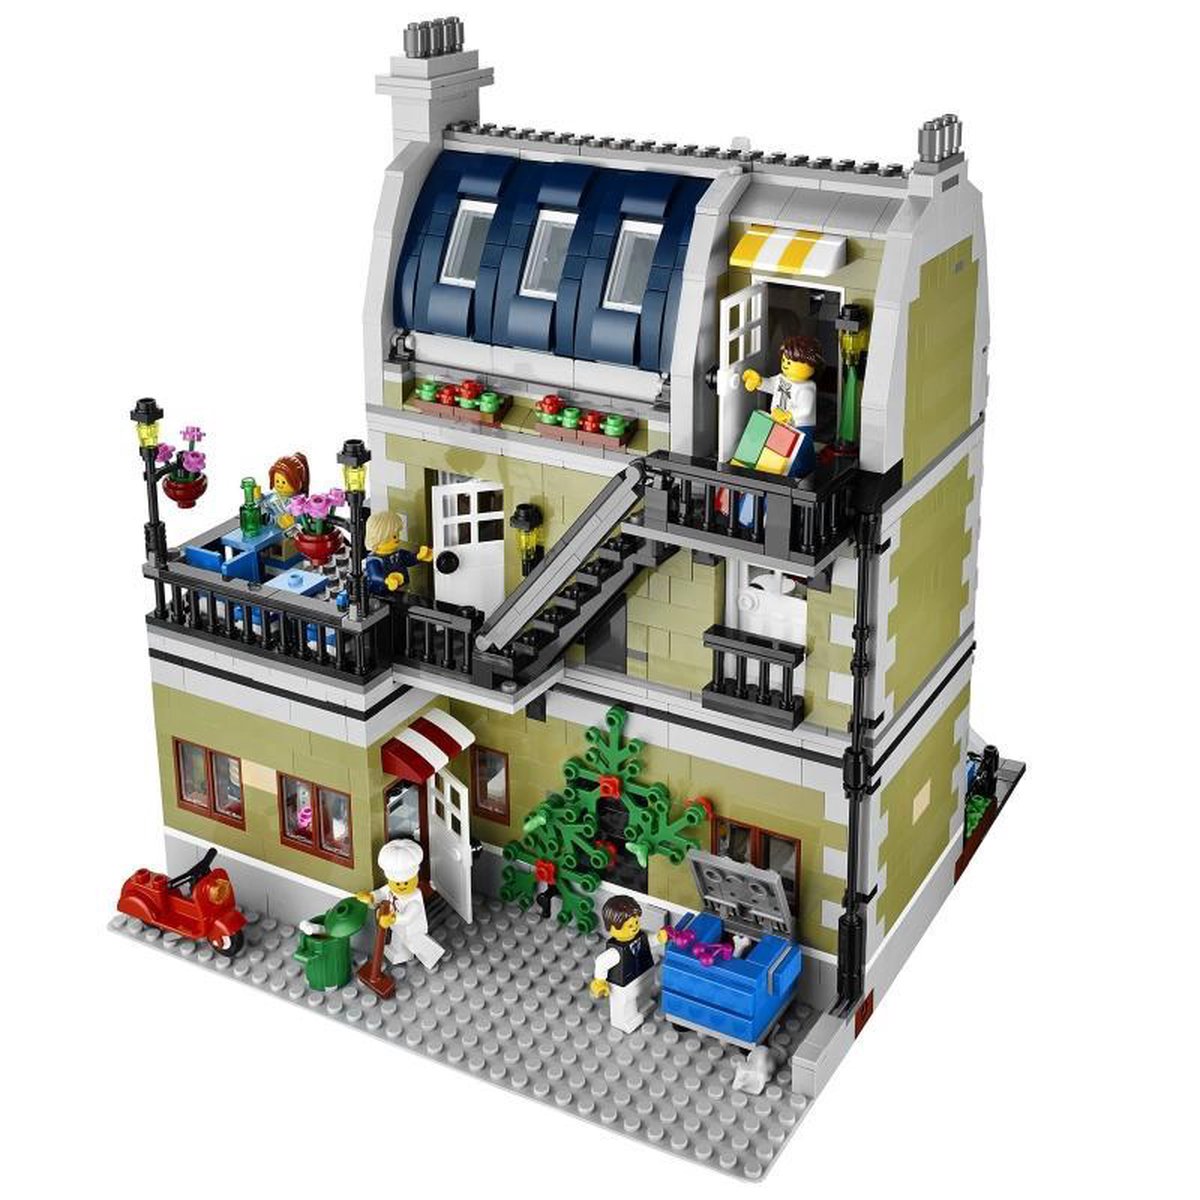 LEGO Creator Expert Parisian Restaurant - 10243 | bol.com